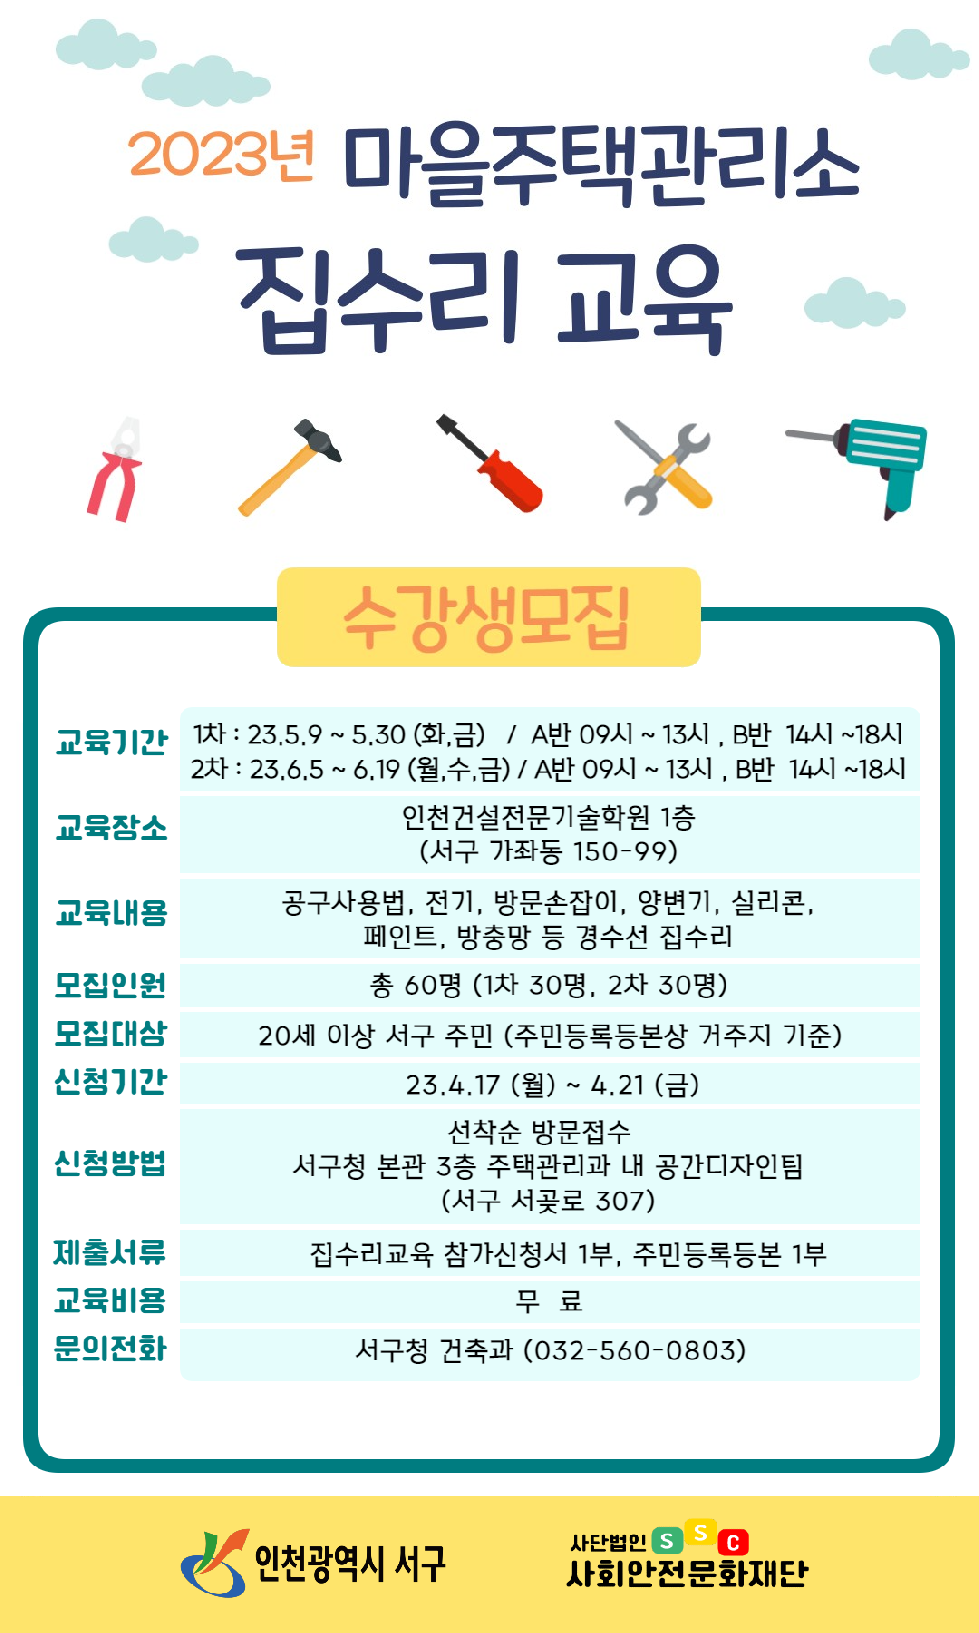 인천 서구, ‘셀프 집수리 무상교육’ 확대 운영···수강생 모집